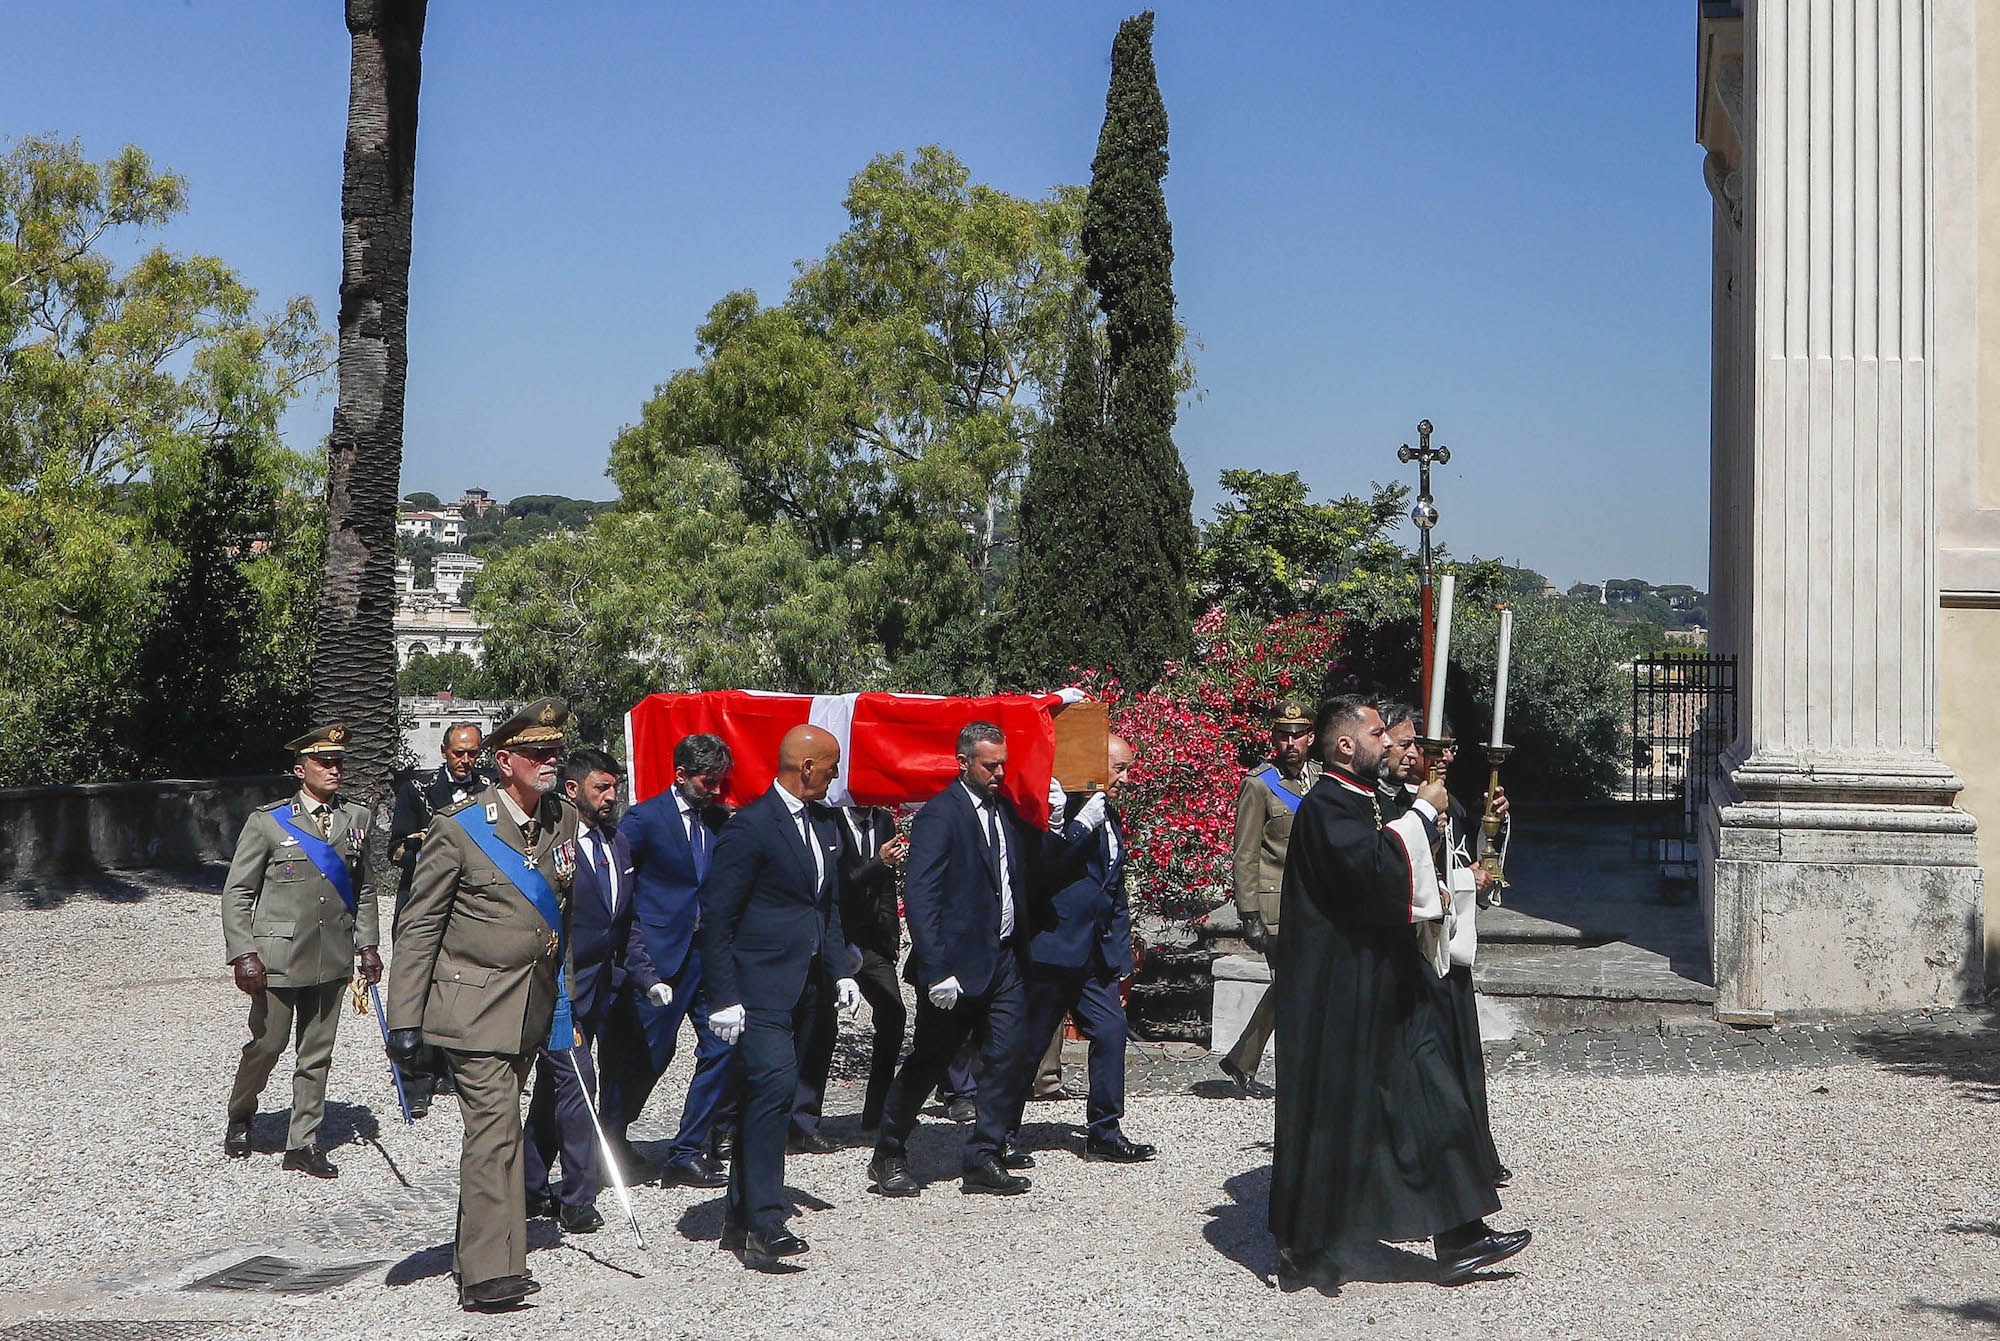 The funeral of Fra’ Marco Luzzago